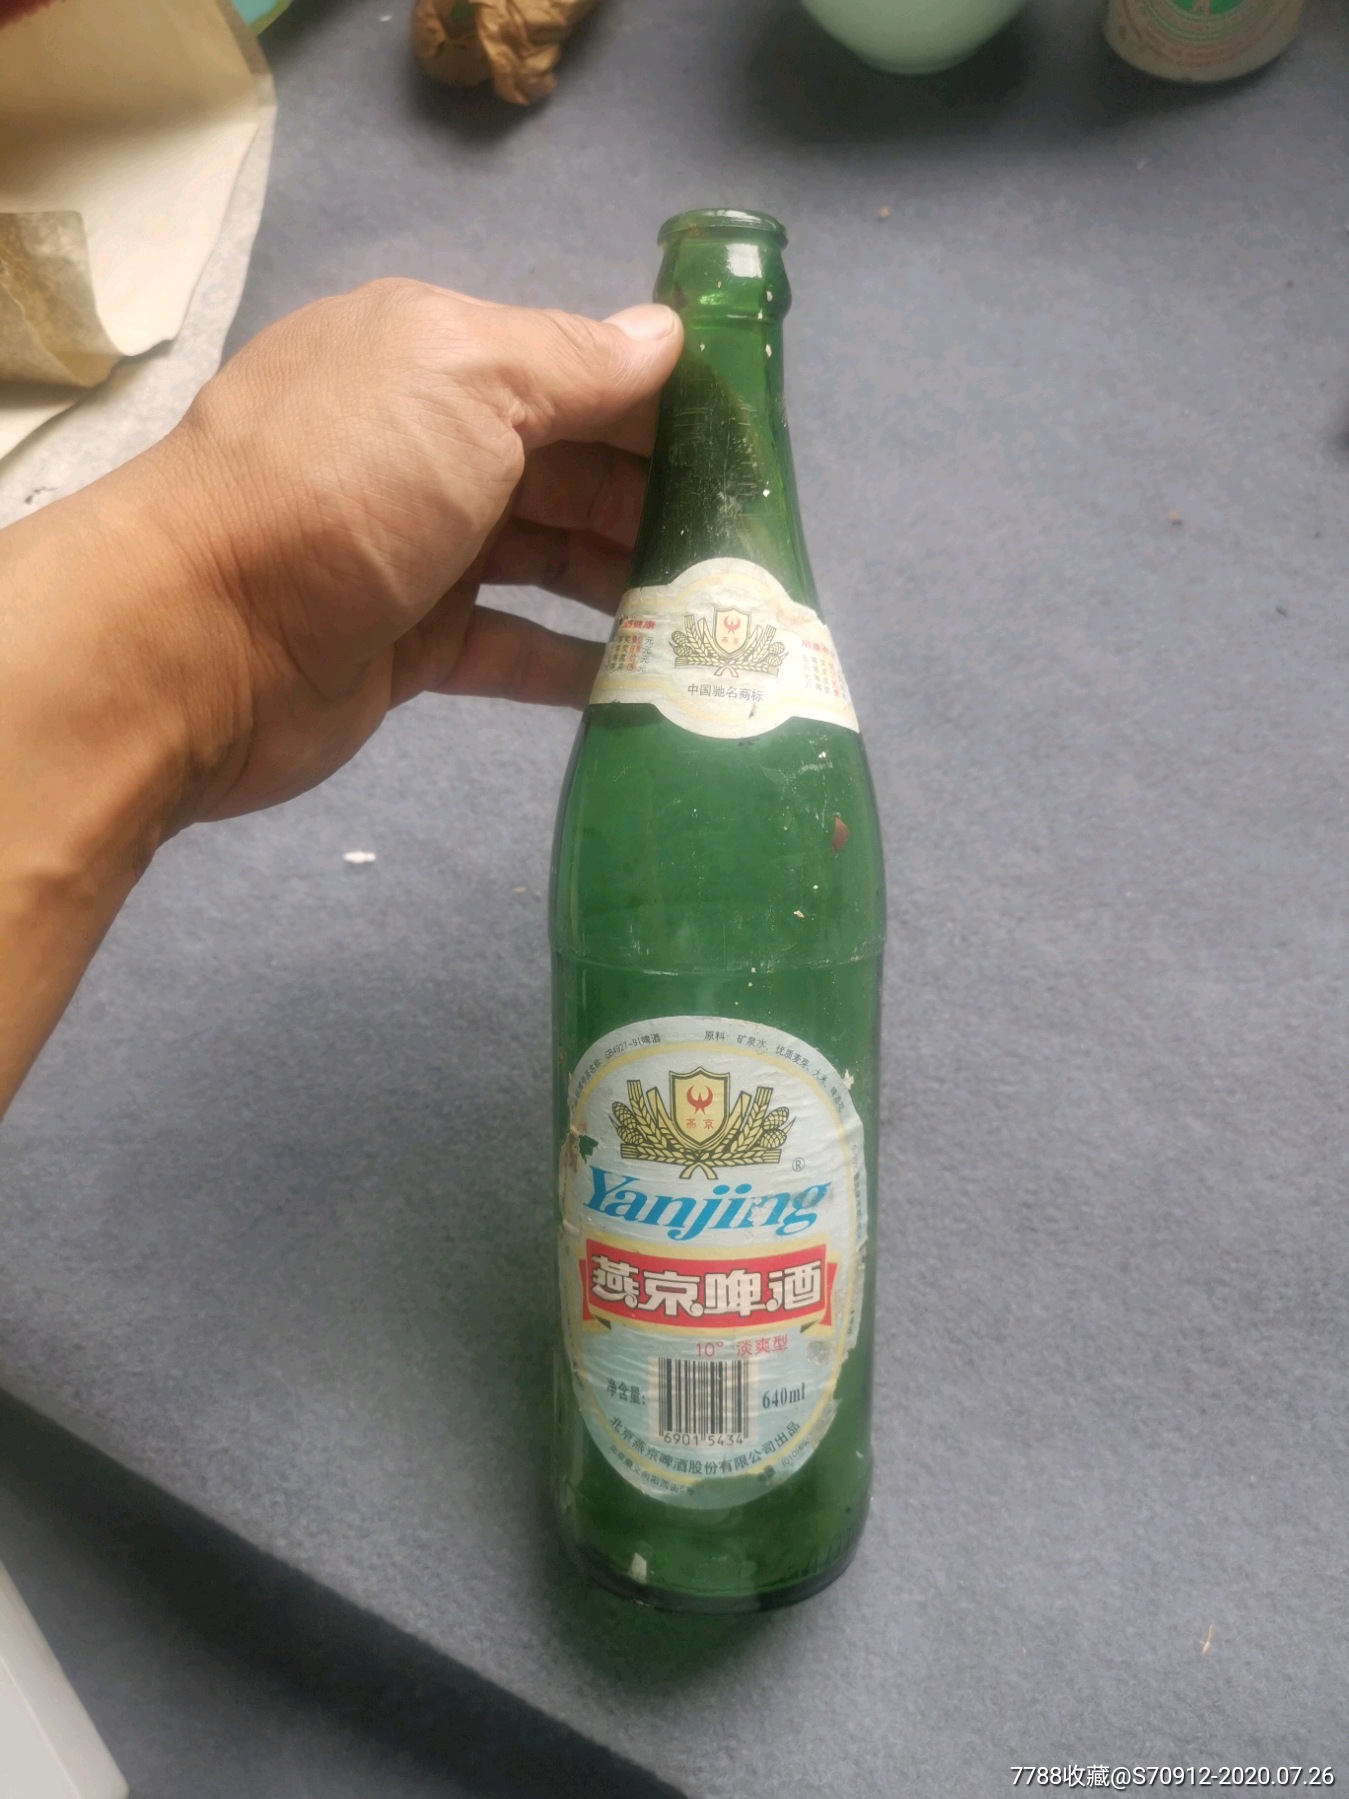 燕京啤酒瓶,九十年代,有奖销售上有